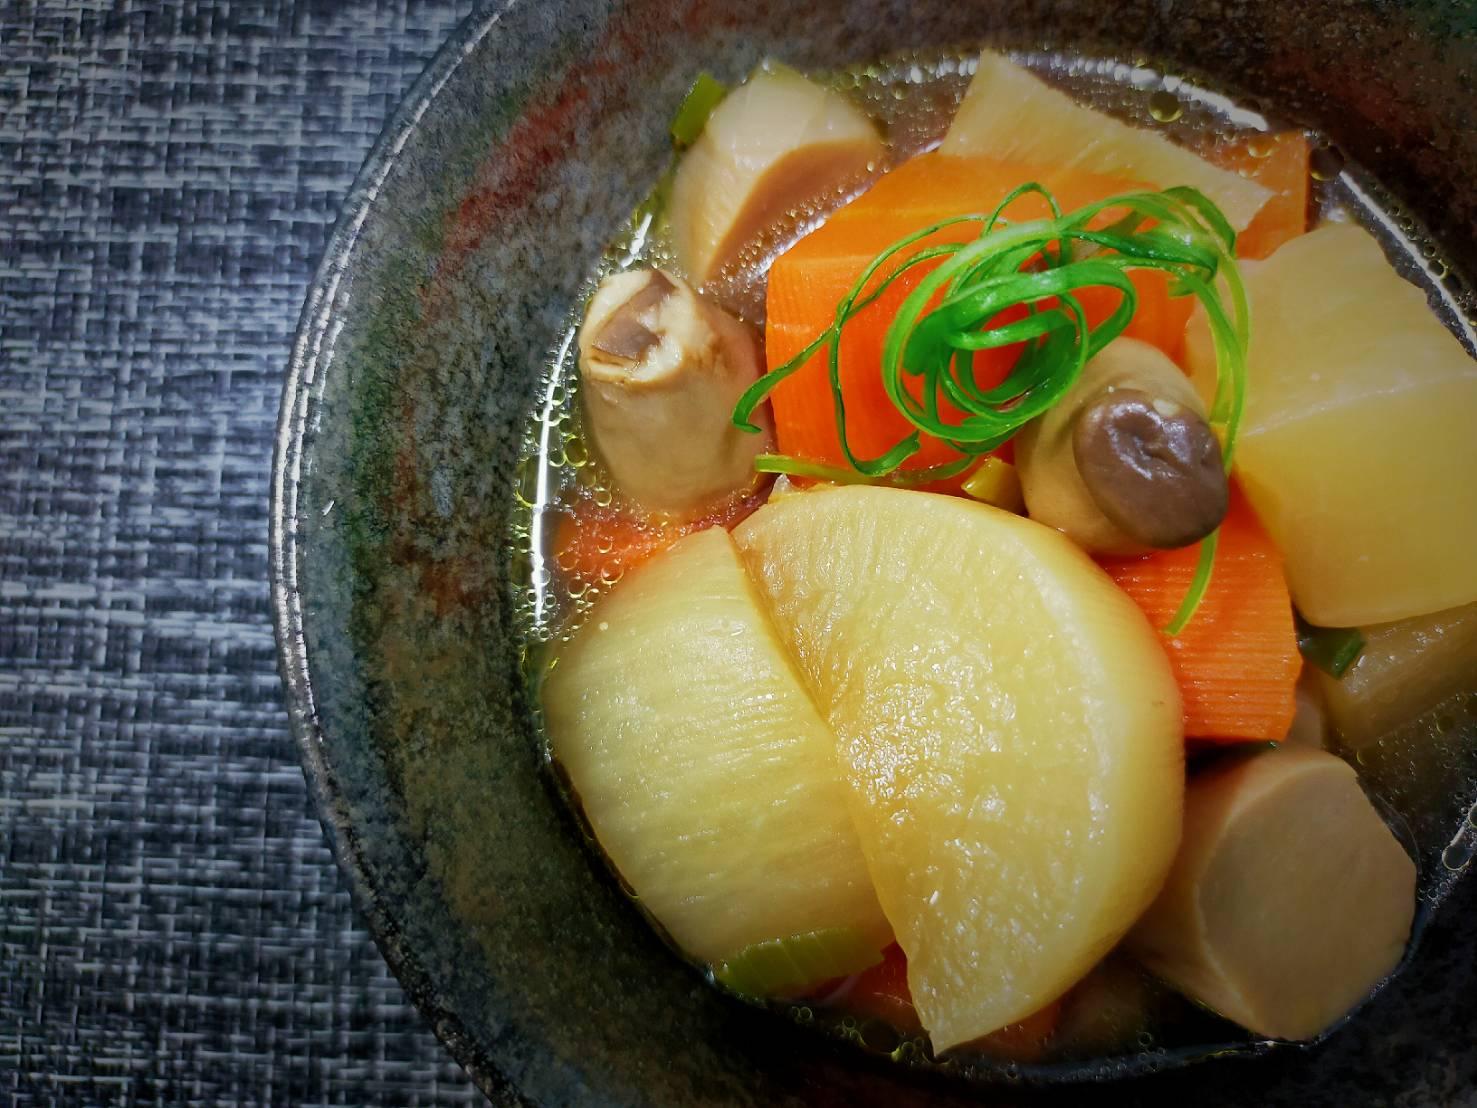 味噌醬煮蘿蔔